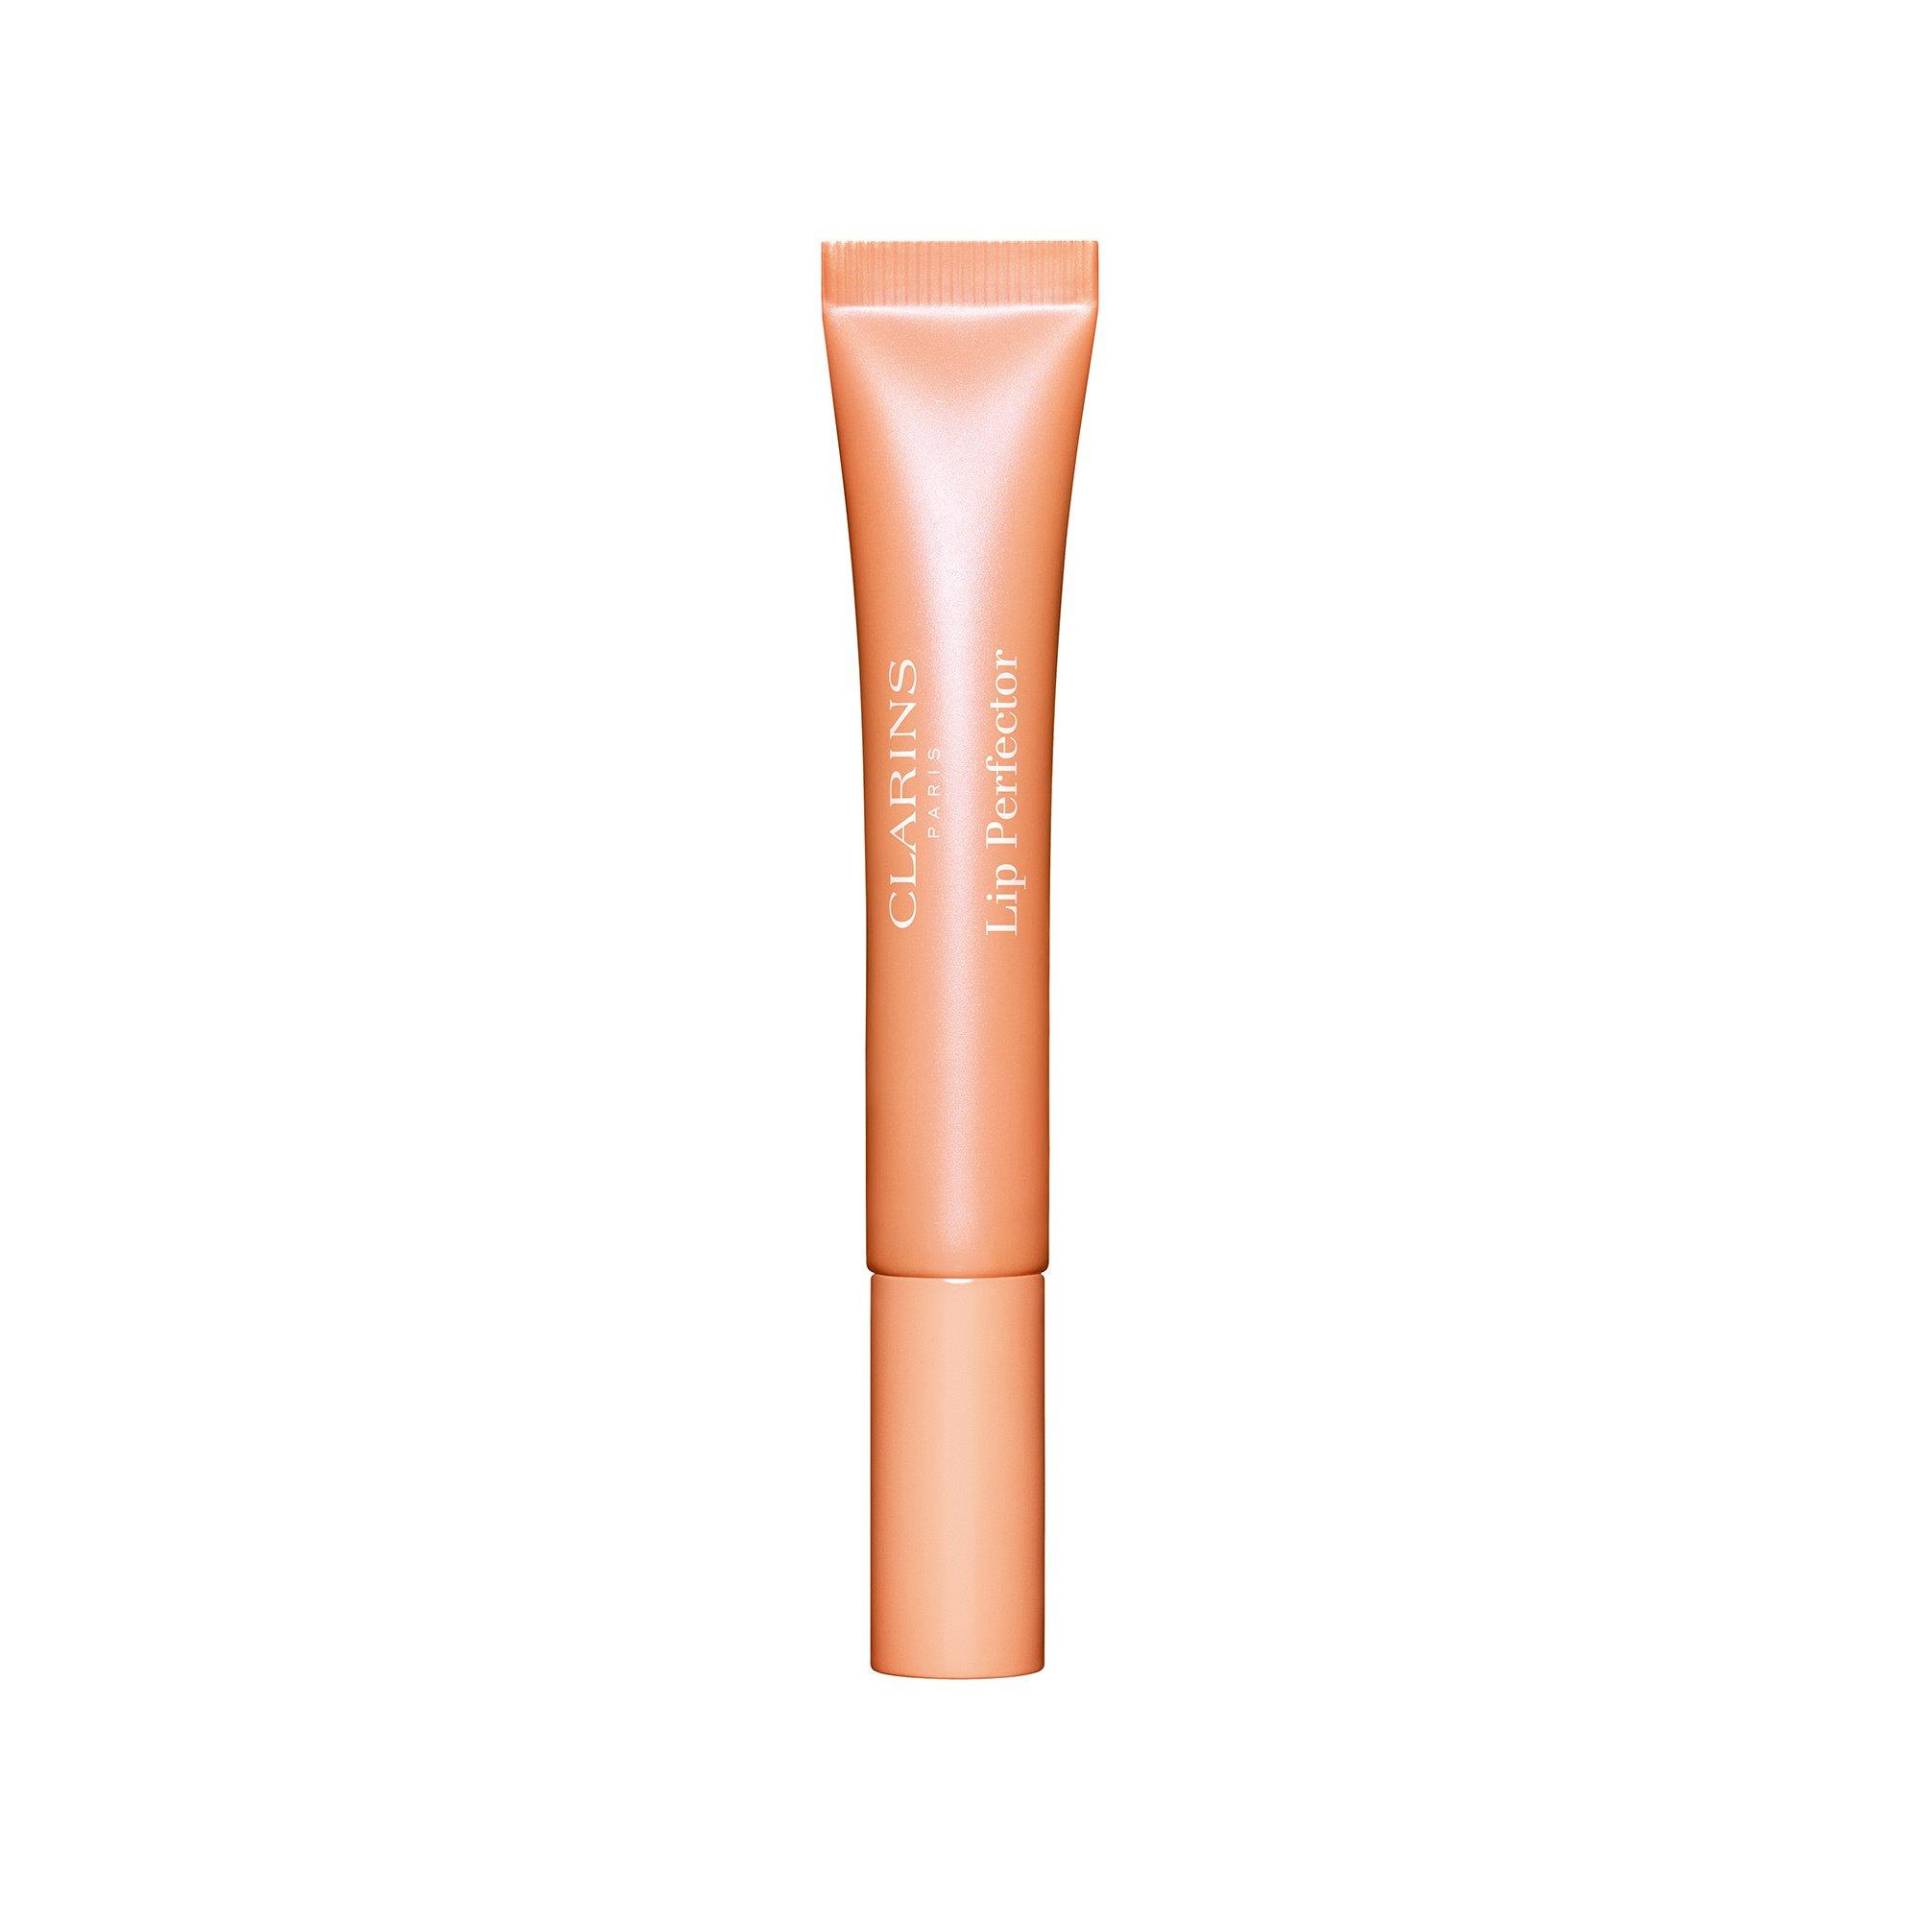 Lip Perfector Glow - Lippen-makeup Mit Glanz-finish Damen  peach glow ml#164/12ml von CLARINS